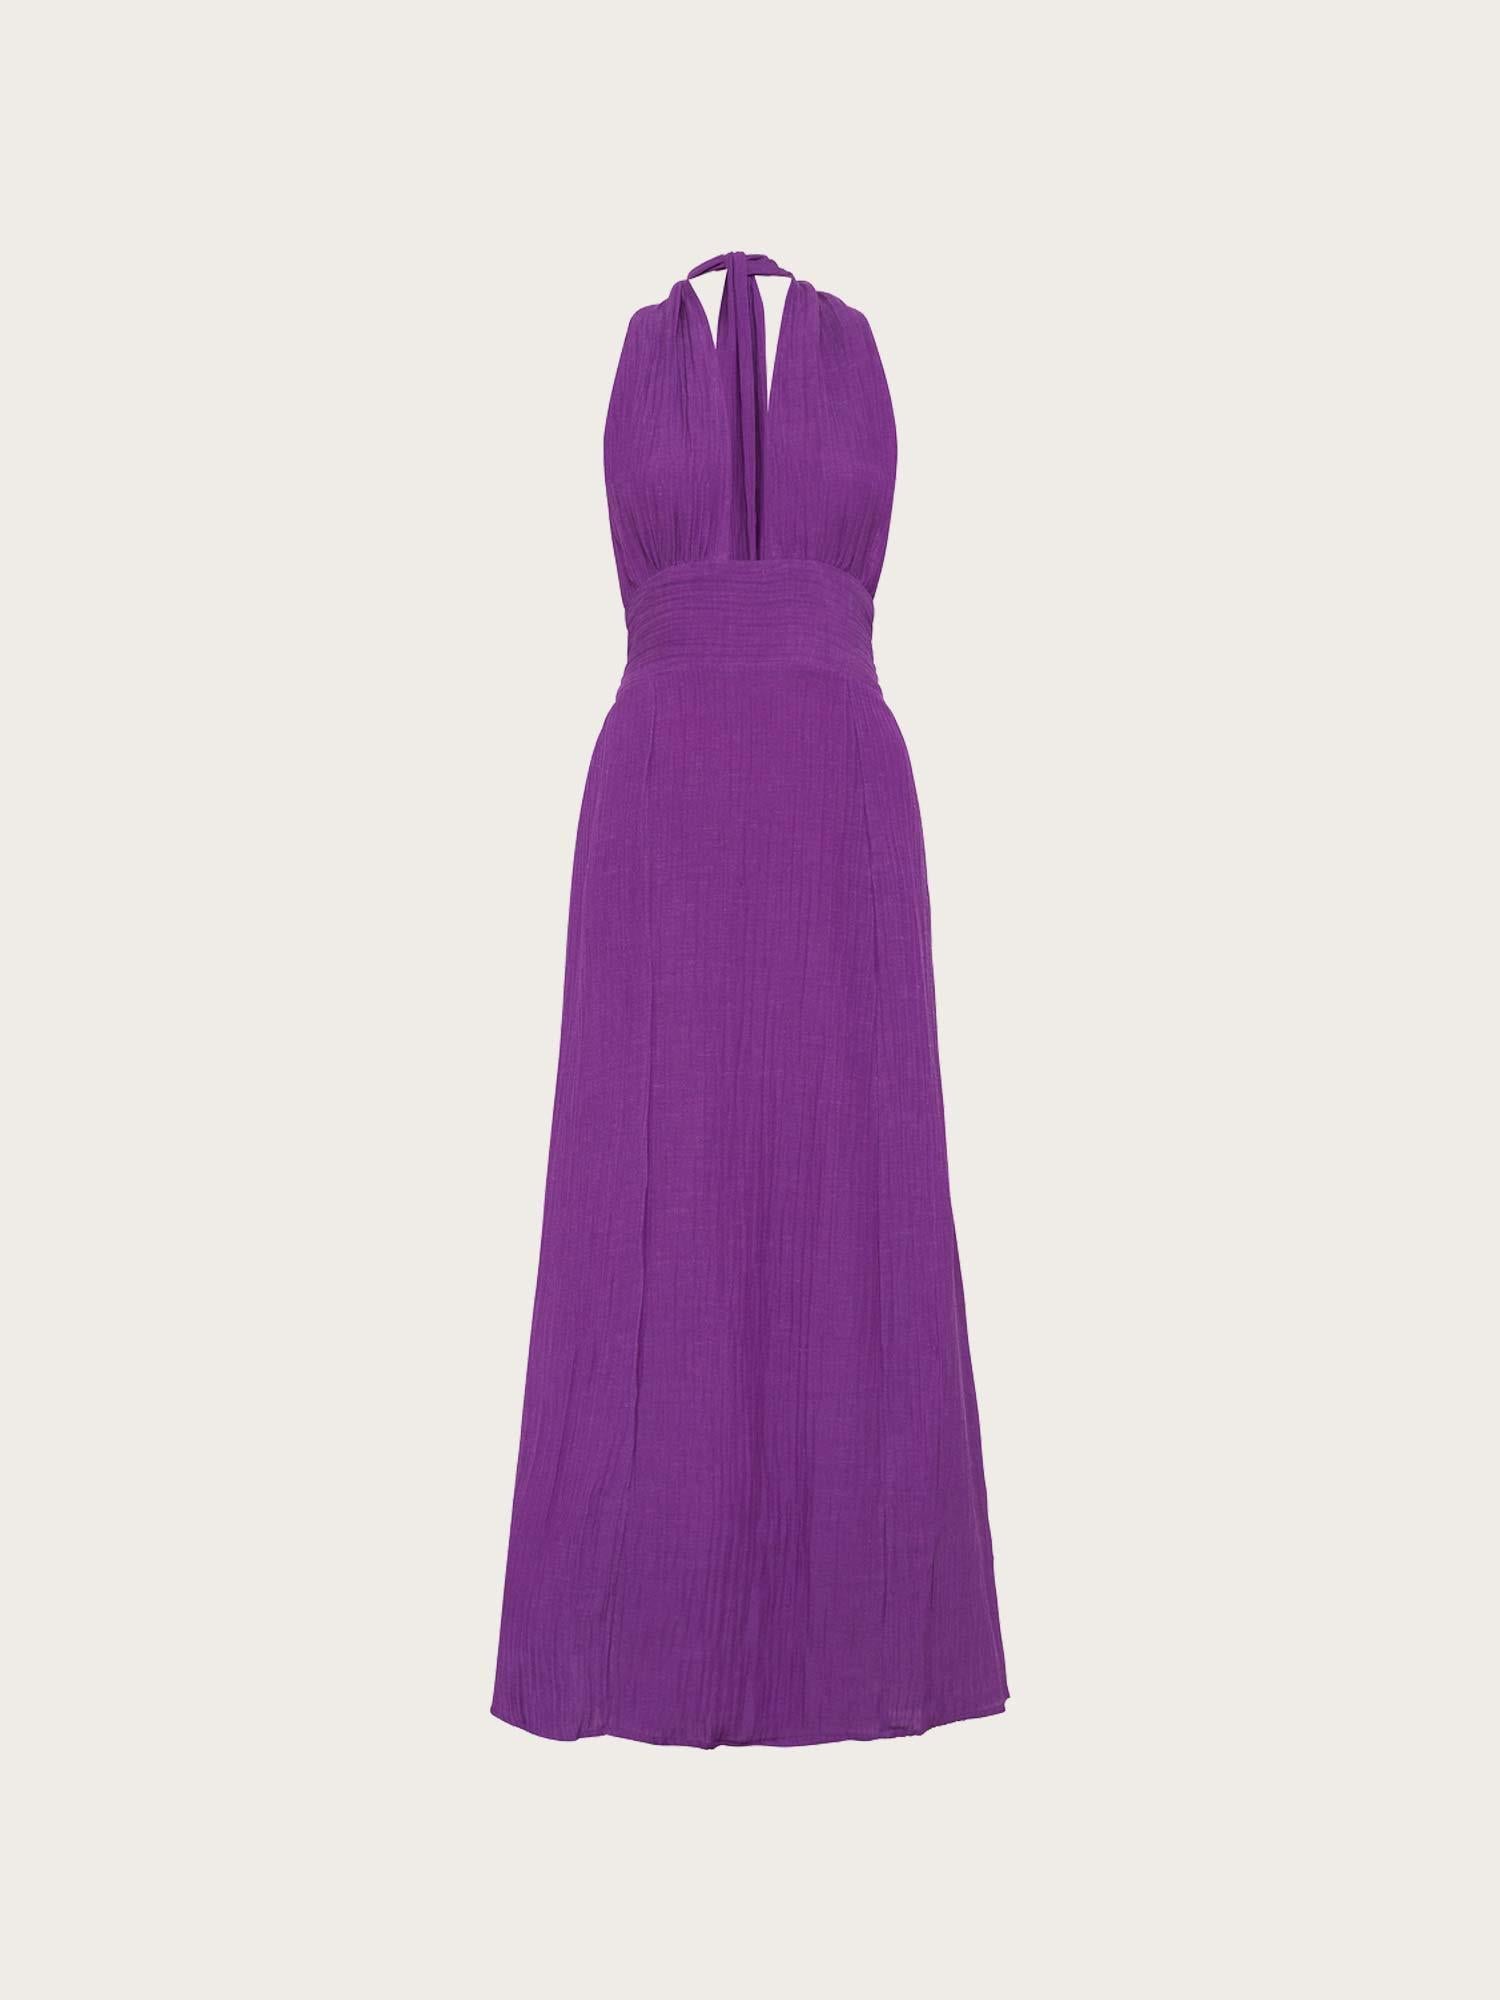 Tropiques Maxi Dress - Violet